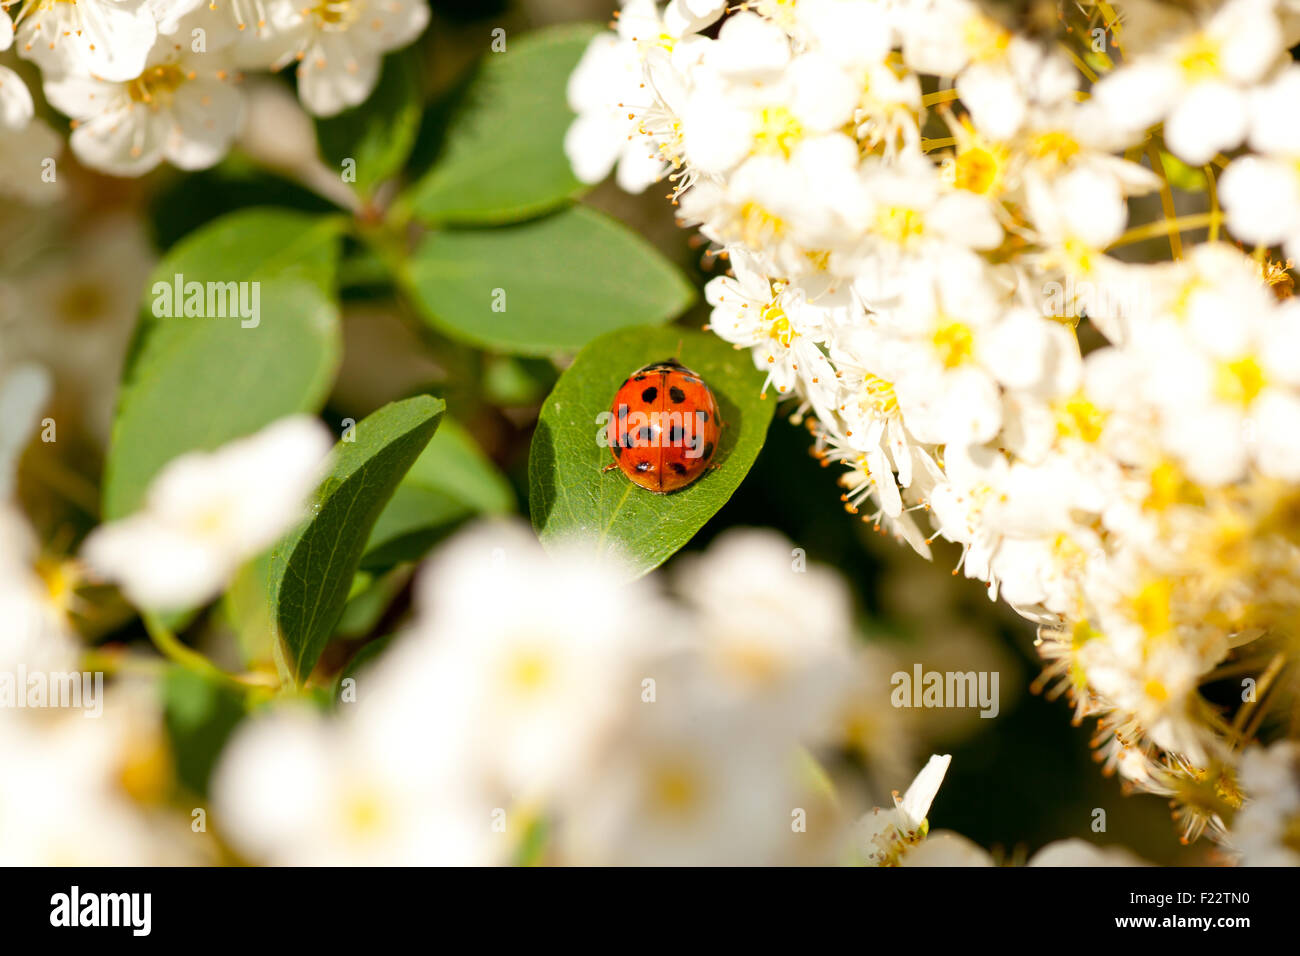 Ladybug walking along on leaf next to the white flowers Stock Photo